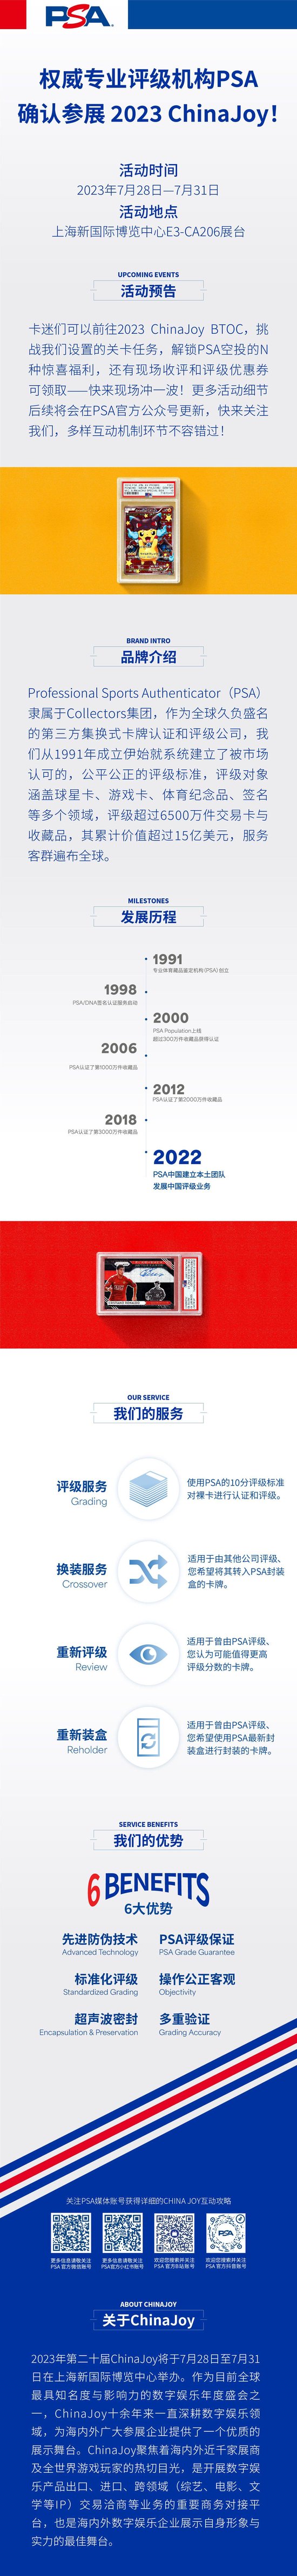 权威专业评级机构 PSA 确认参展 2023 ChinaJoy！